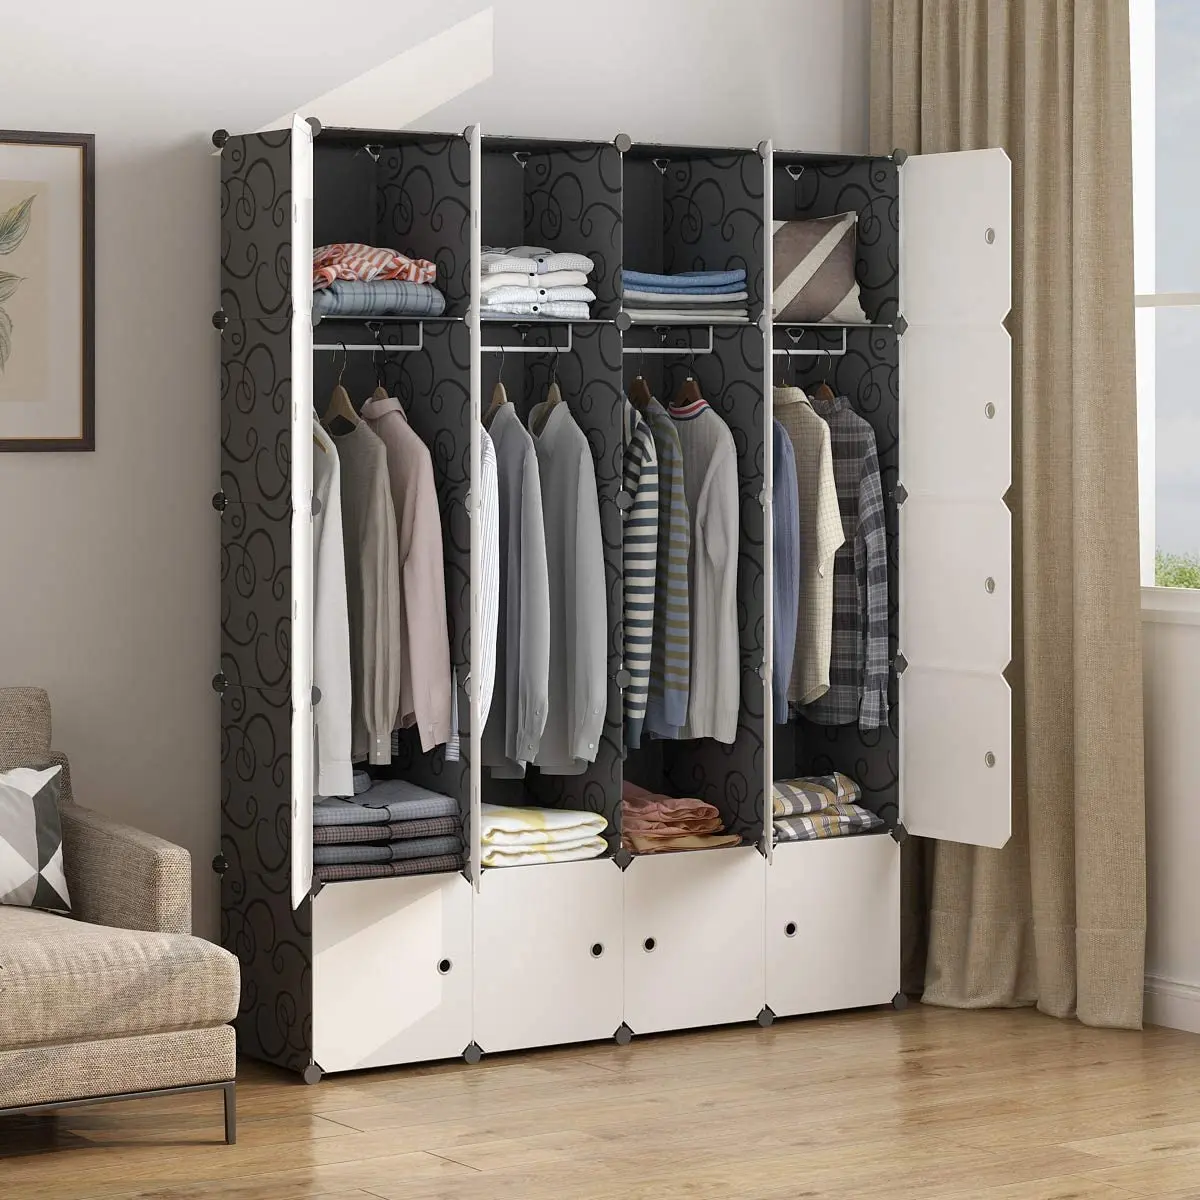 

Портативный шкаф с вешалкой для одежды, органайзеры для шкафа, полки для шкафа, шкаф для спальни, (56x18x70